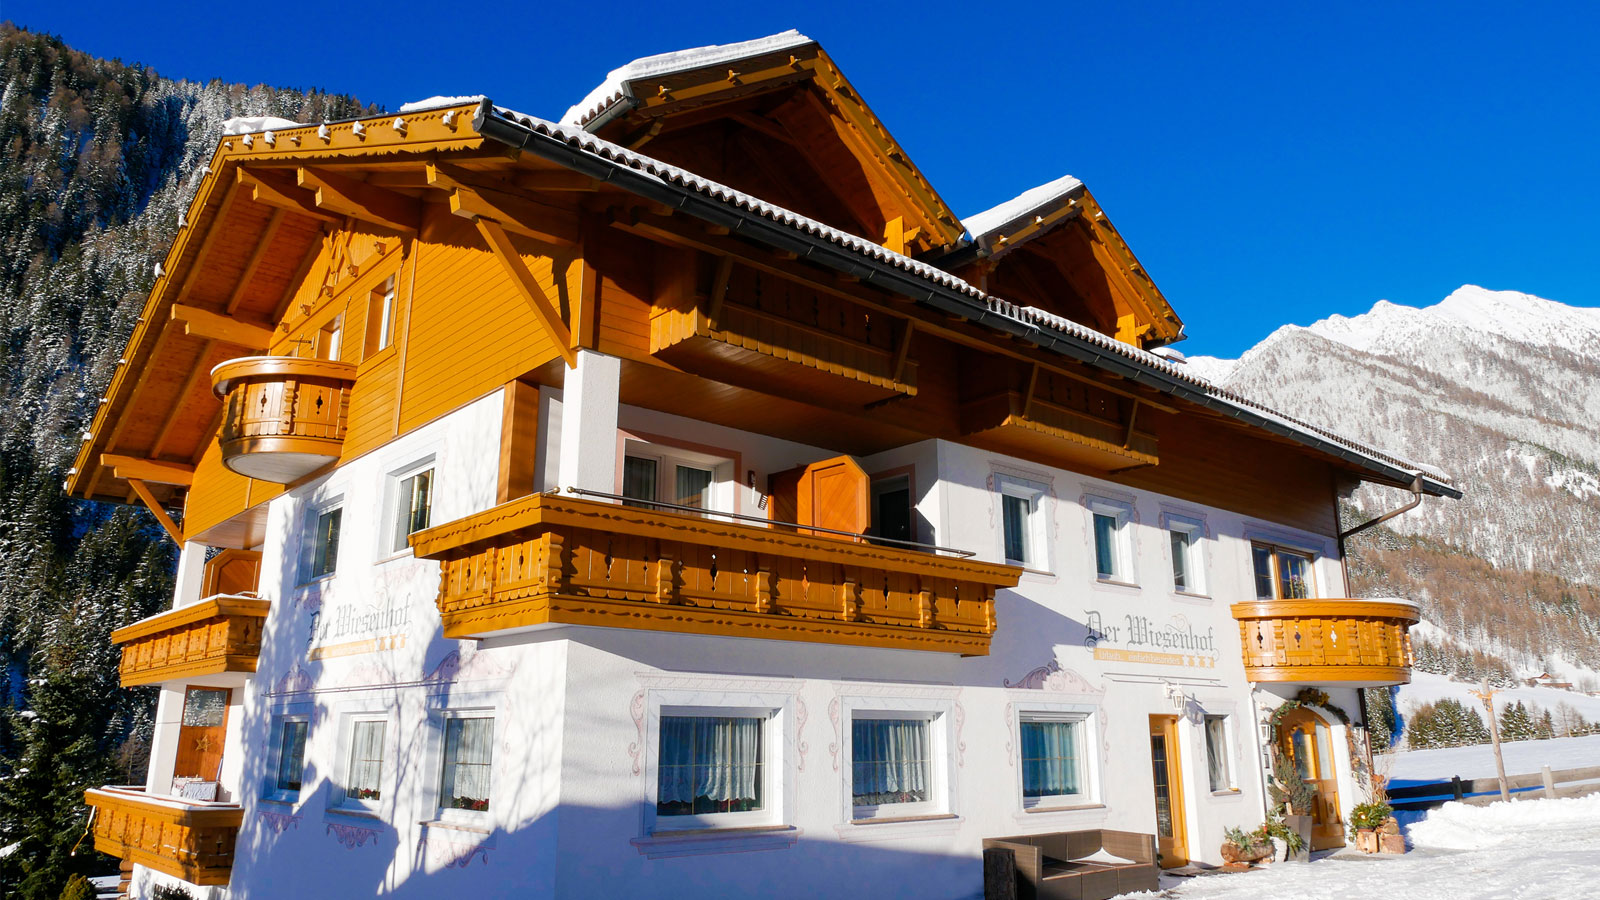 Das Hotel Der Wiesenhof in der Wintersaison umgeben von verschneiten Bergen